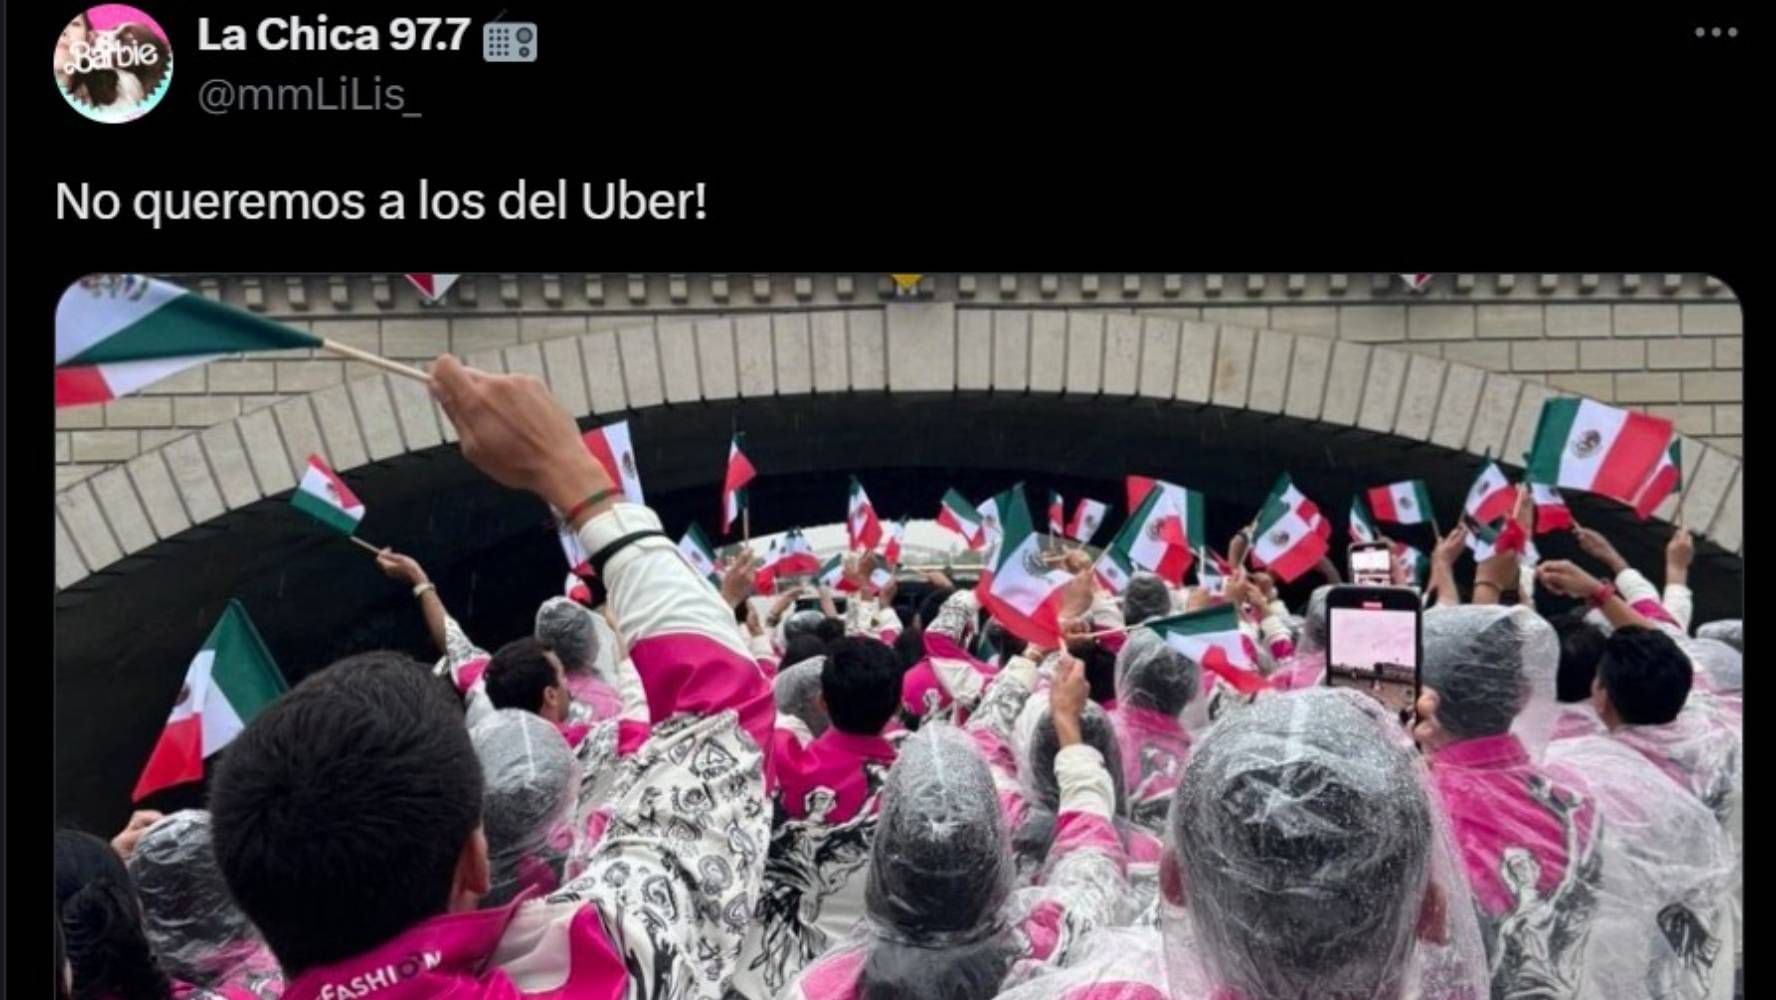 Los memes recordaron los colores de los taxis de la CDMX. (Foto: Redes sociales)